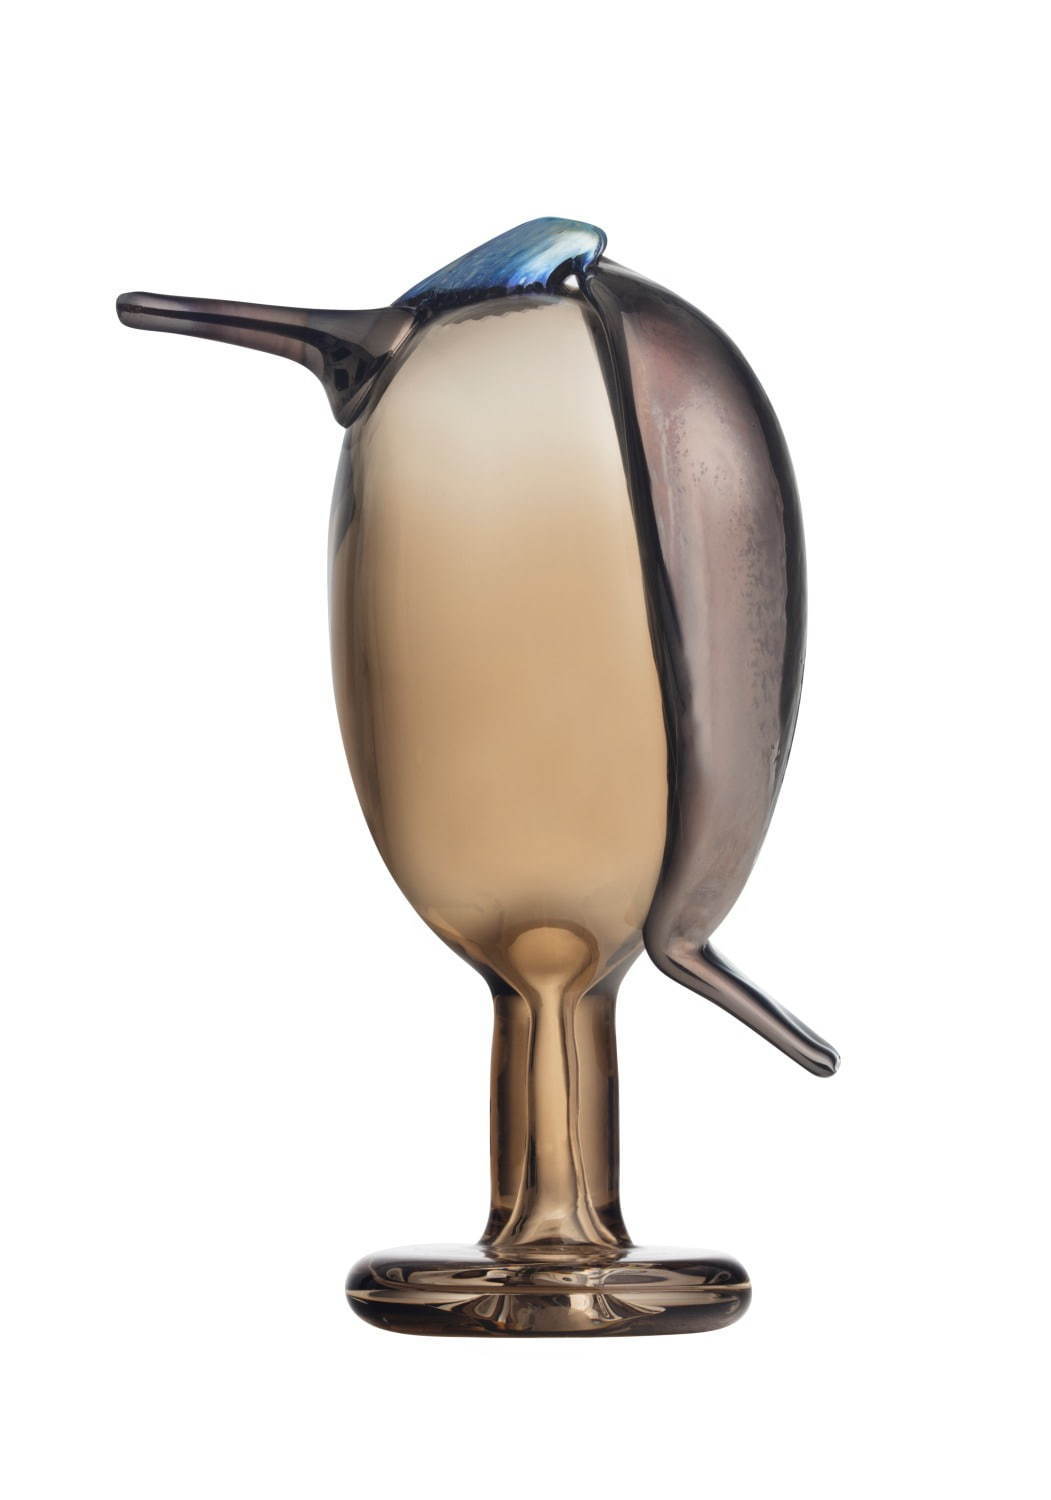 イッタラ「フローラ」新作ガラス食器 - 草花模様を配したタンブラー、手のひらサイズの鳥オブジェも｜写真10